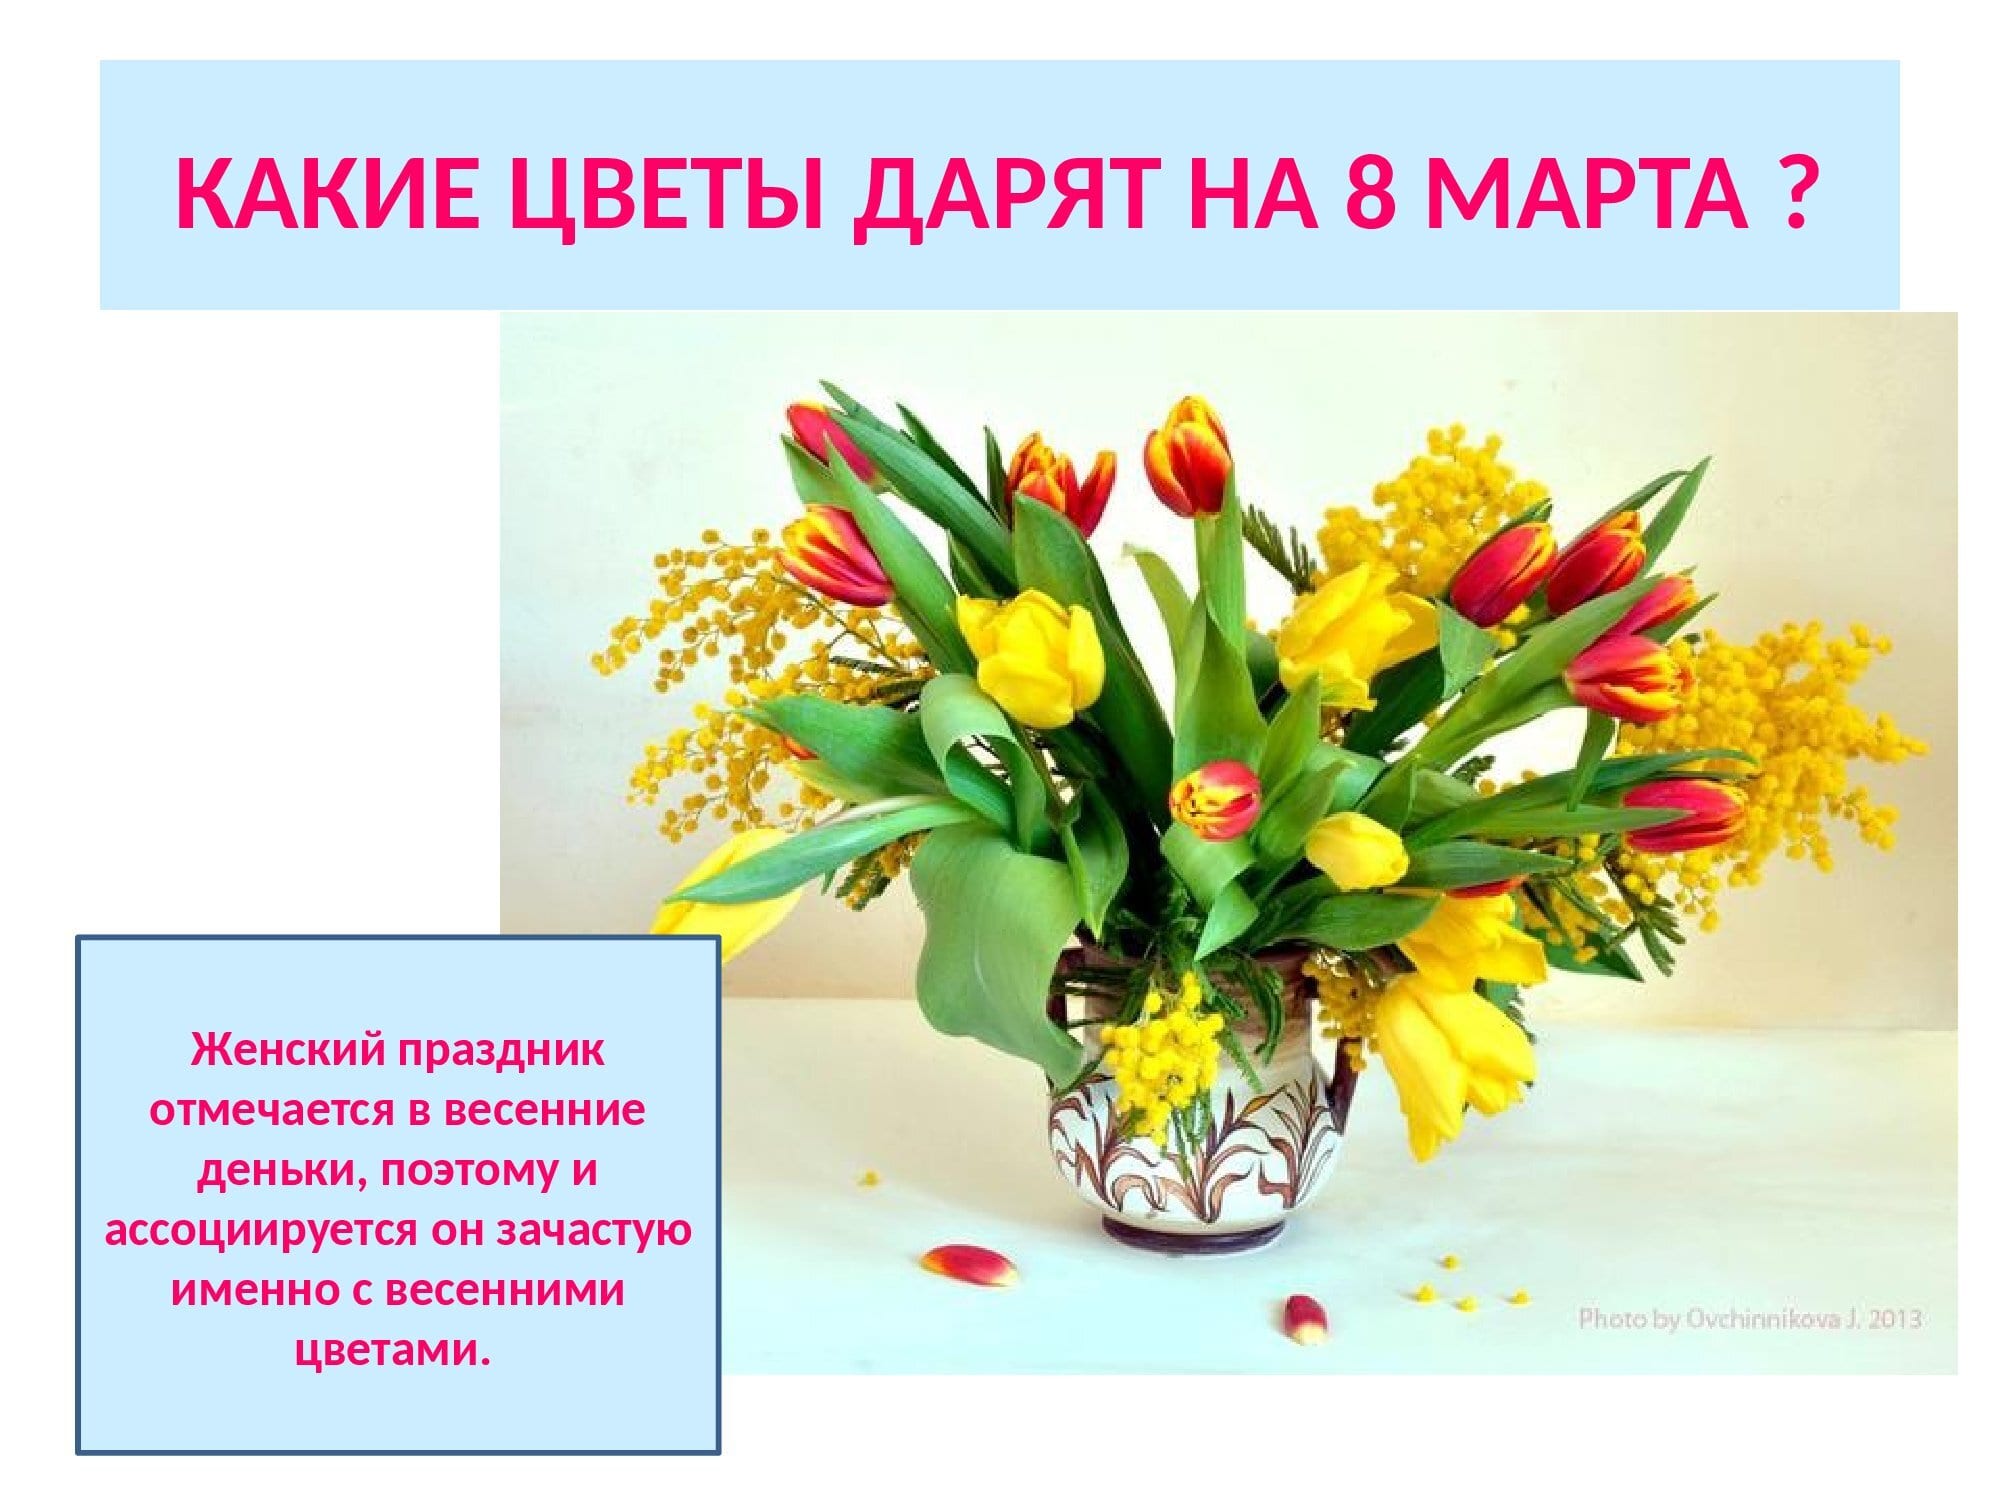 Фото с мимозой и тюльпанами для инстаграмма